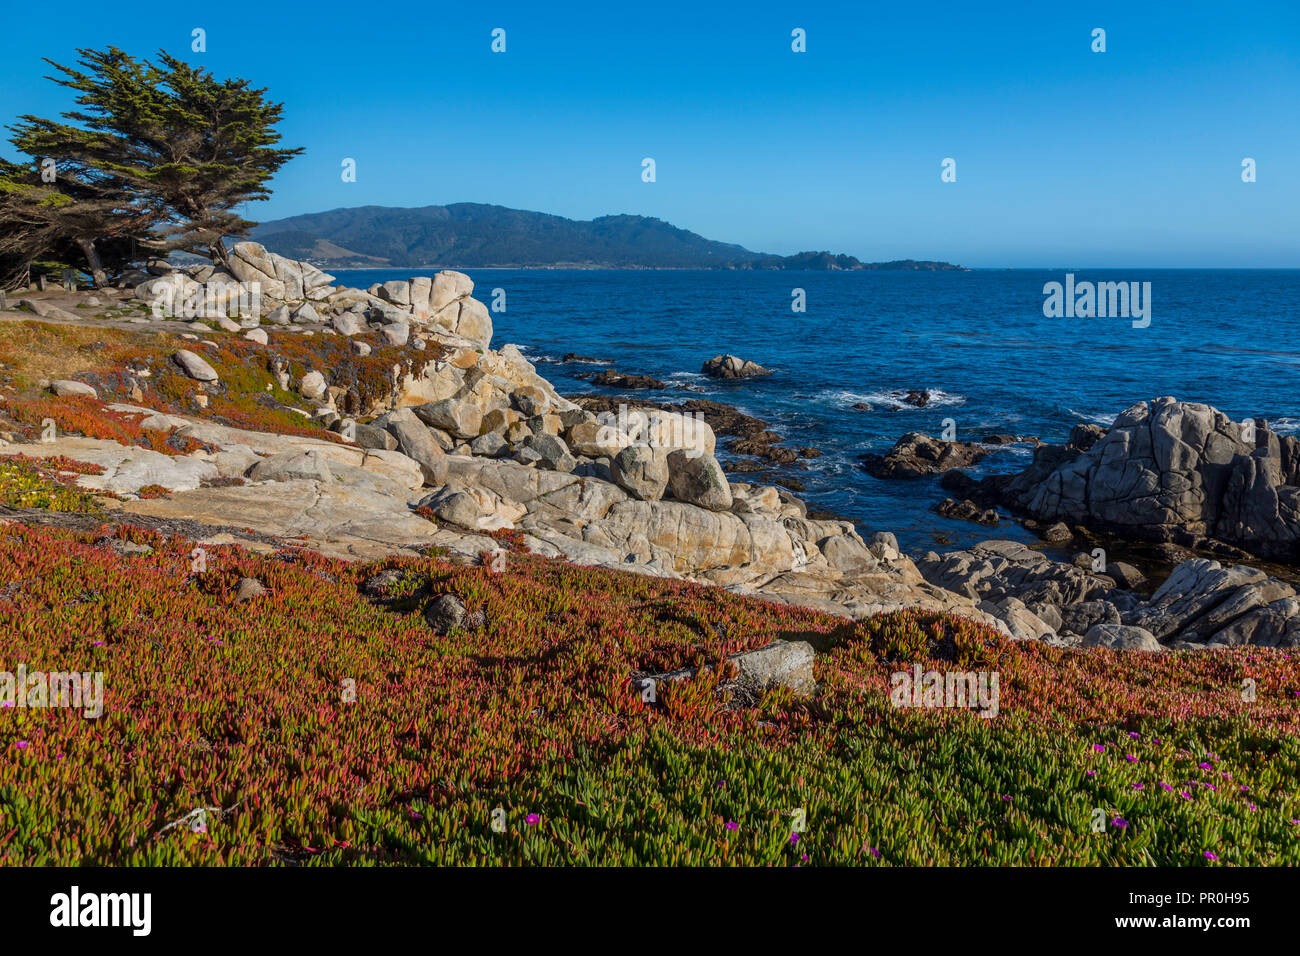 Blick auf die Bay und felsigen Küstenlinie in Pebble Beach, 17 Kilometer Fahrt, Halbinsel, Monterey, Kalifornien, Vereinigte Staaten von Amerika, Nordamerika Stockfoto